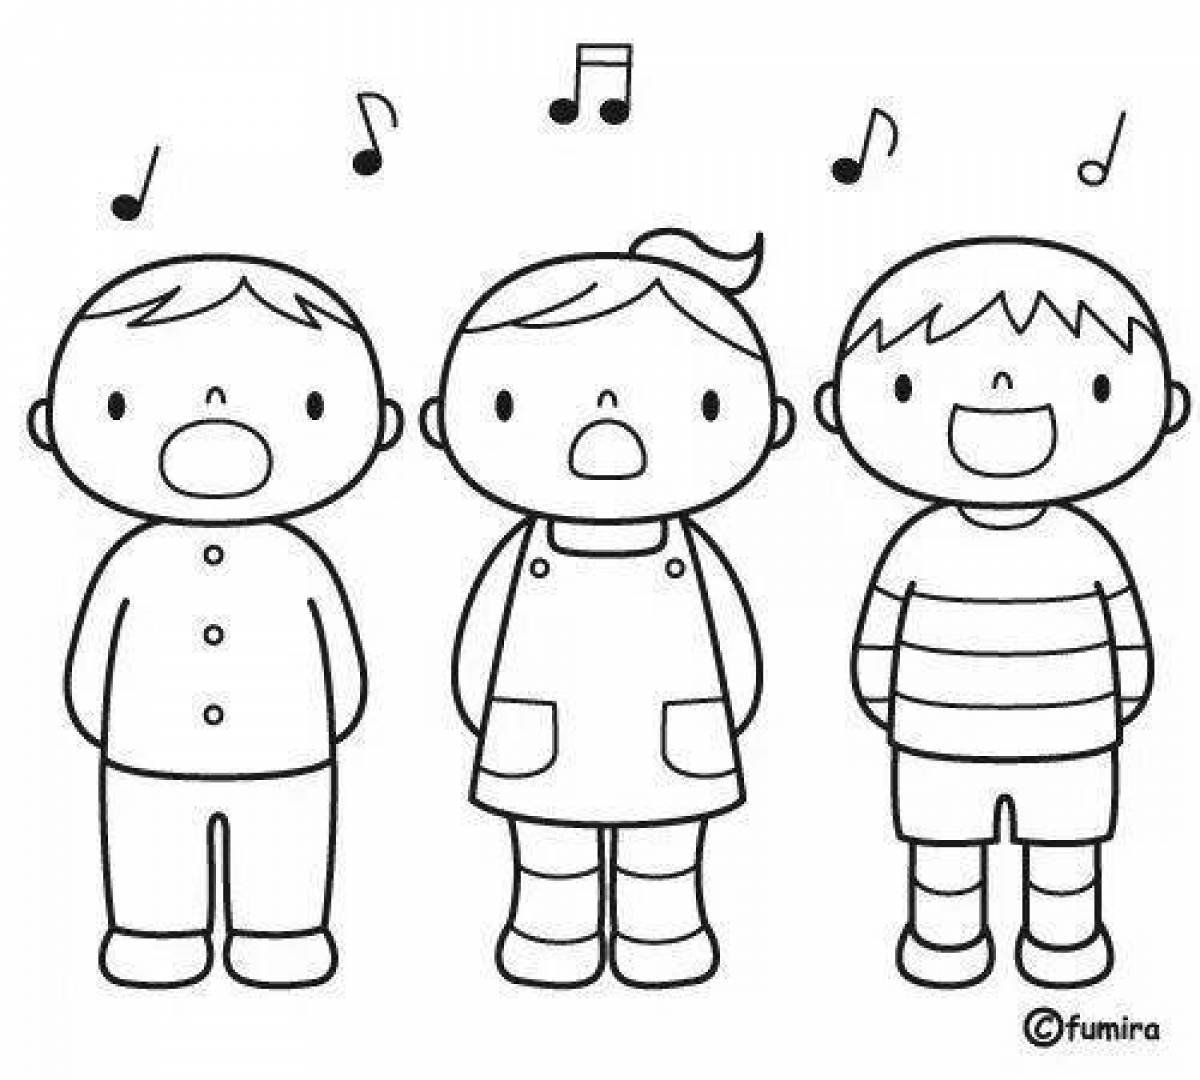 Singing cheerful children